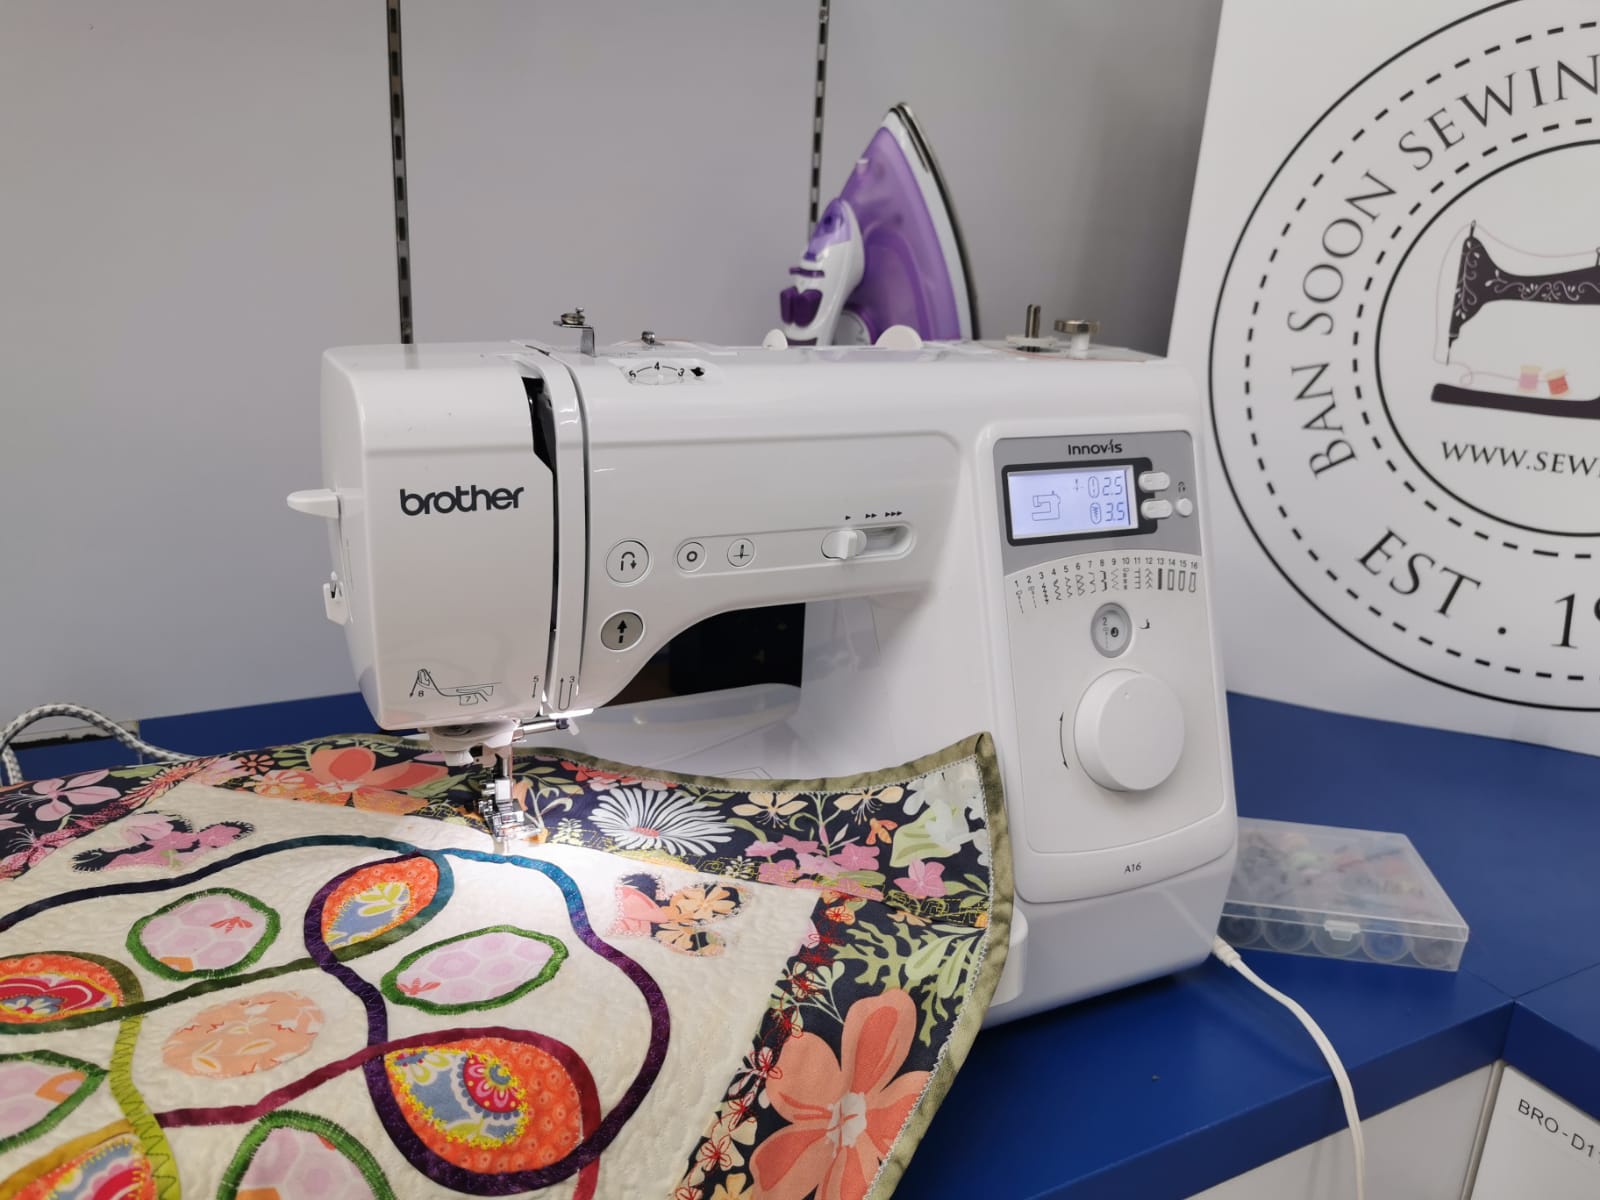 Sewsol Equipment Sharing by Ban Soon Sewing Machine Pte Ltd www.Sewing.sg/sewsol